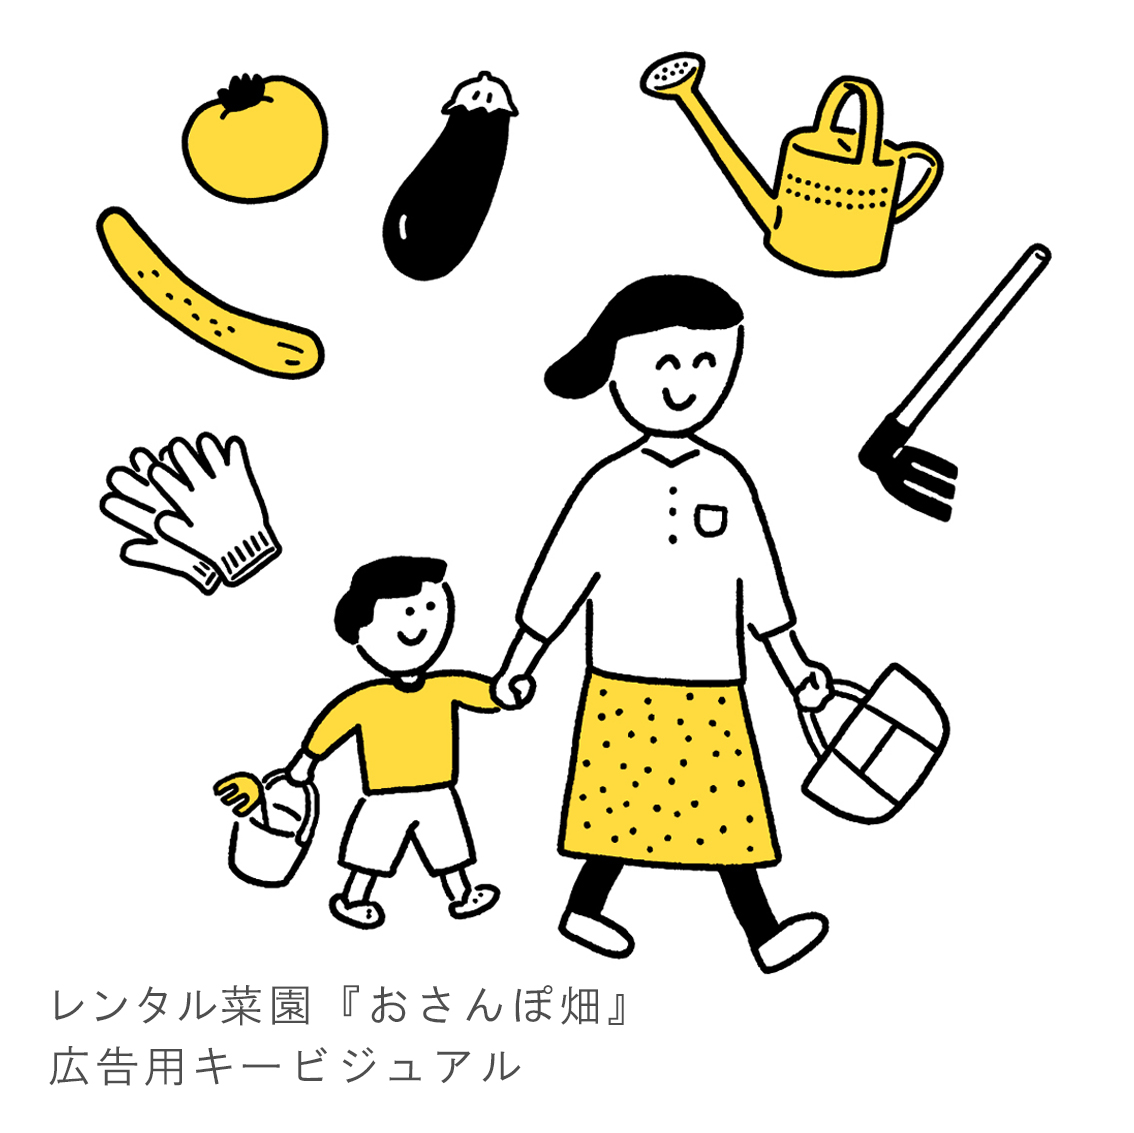 レンタル菜園『おさんぽ畑』広告用キービジュアル